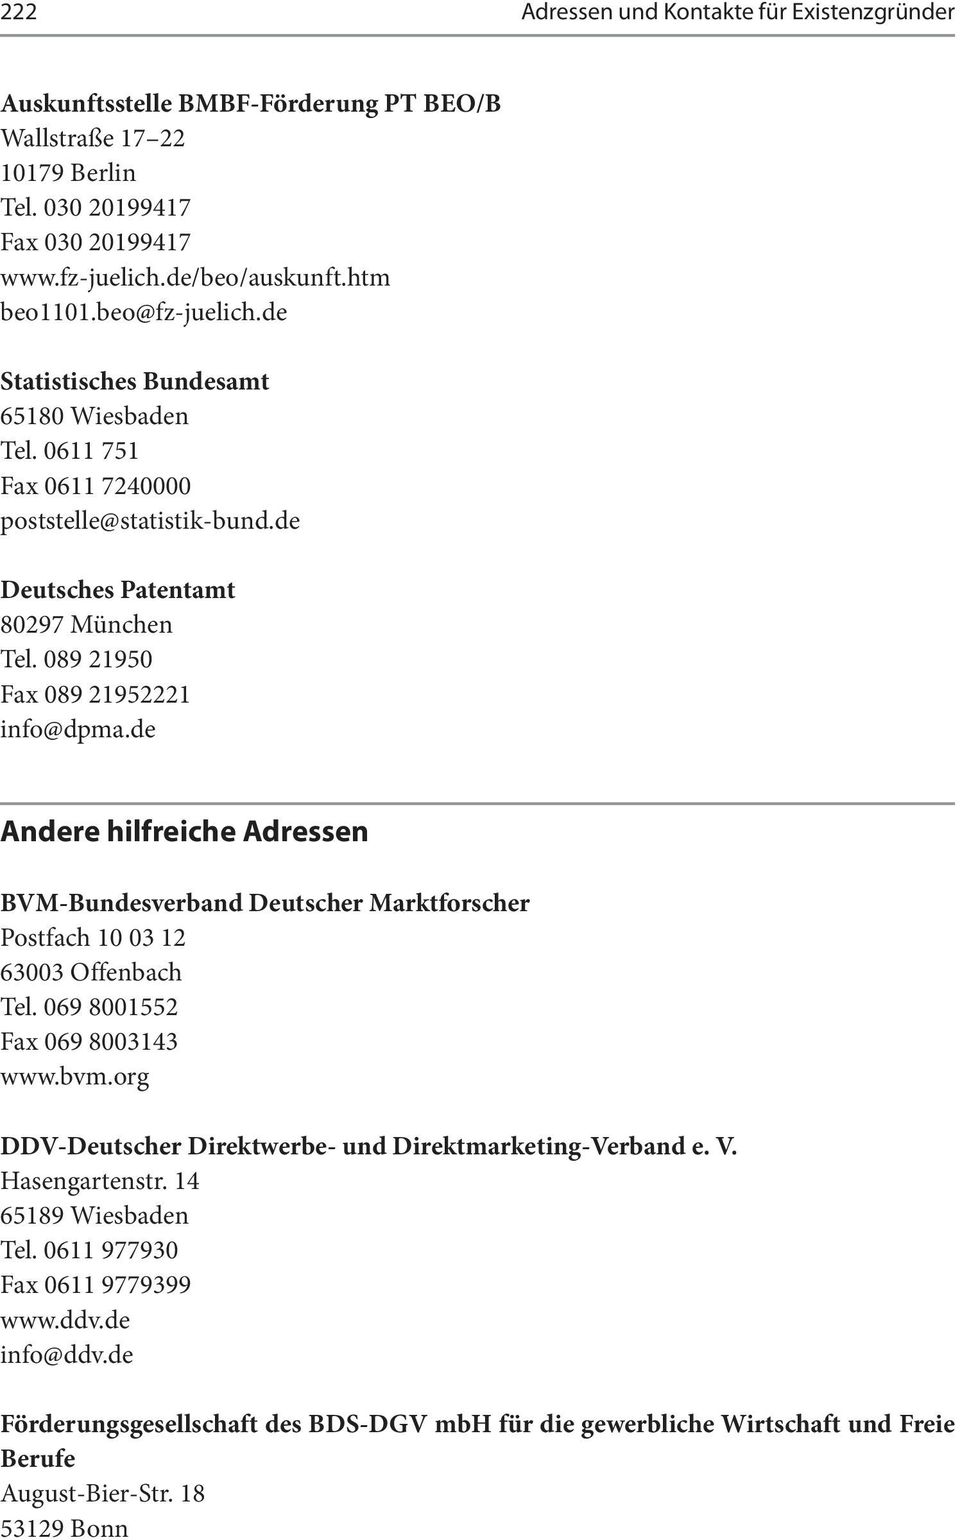 de Andere hilfreiche Adressen BVM-Bundesverband Deutscher Marktforscher Postfach 10 03 12 63003 Offenbach Tel. 069 8001552 Fax 069 8003143 www.bvm.